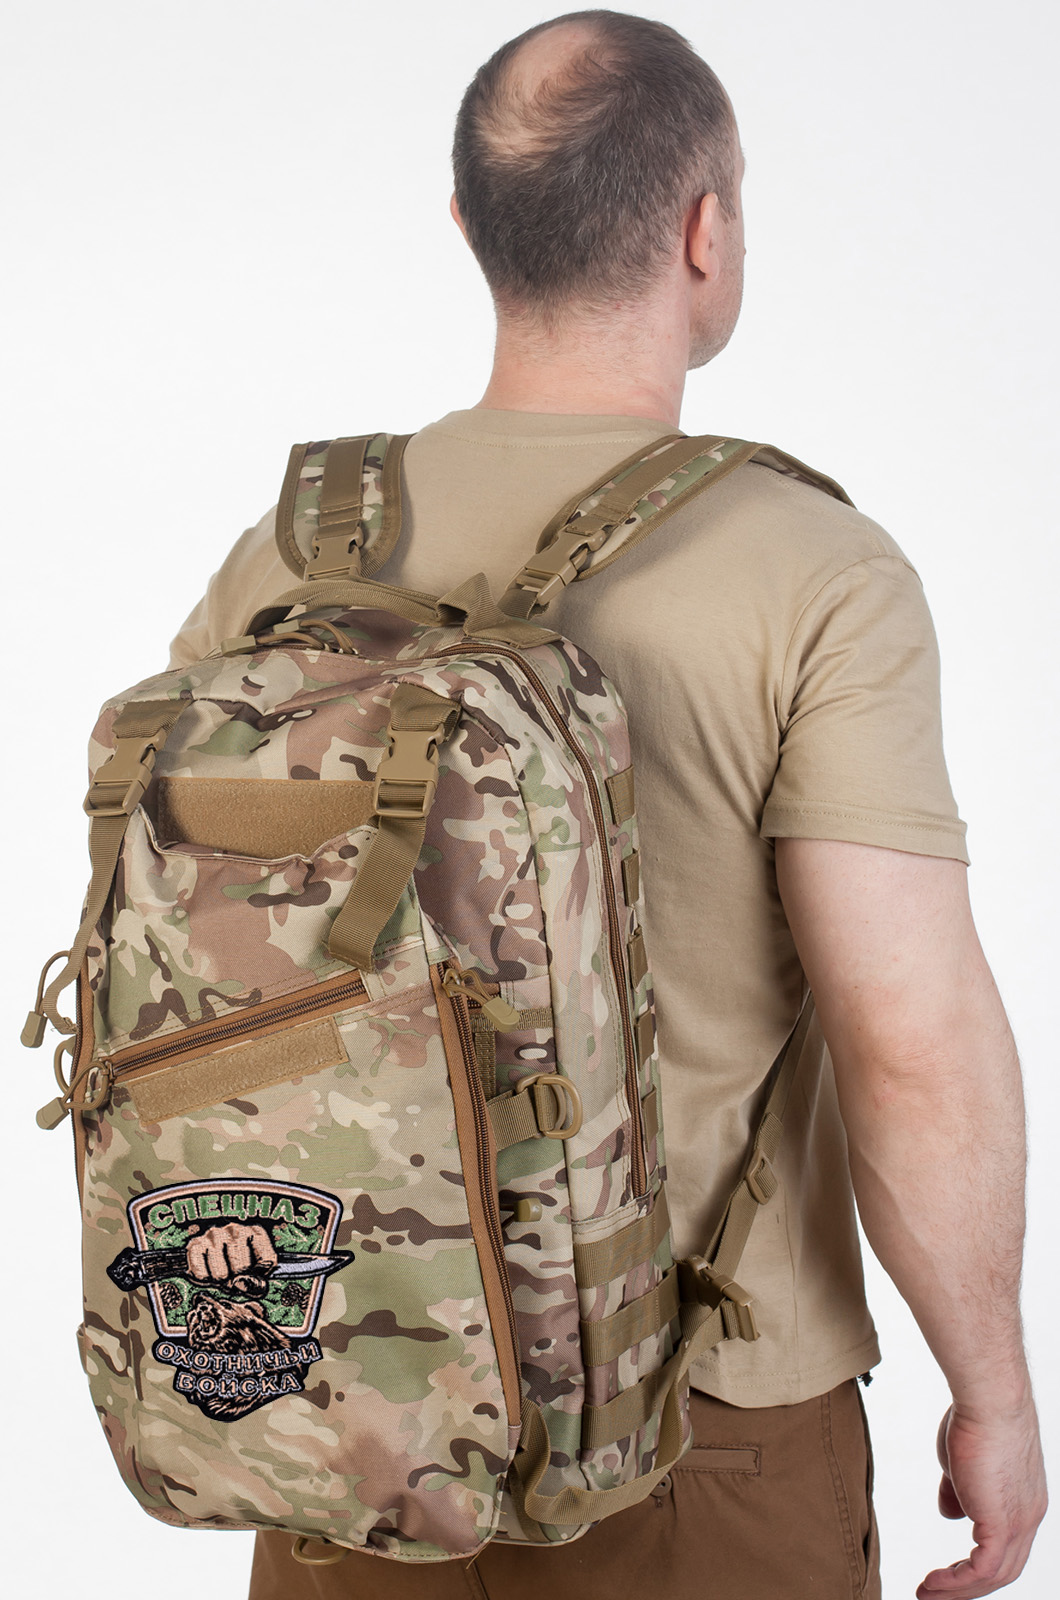 Удобный мужской рюкзак с нашивкой Охотничий Спецназ (15-20 л) 